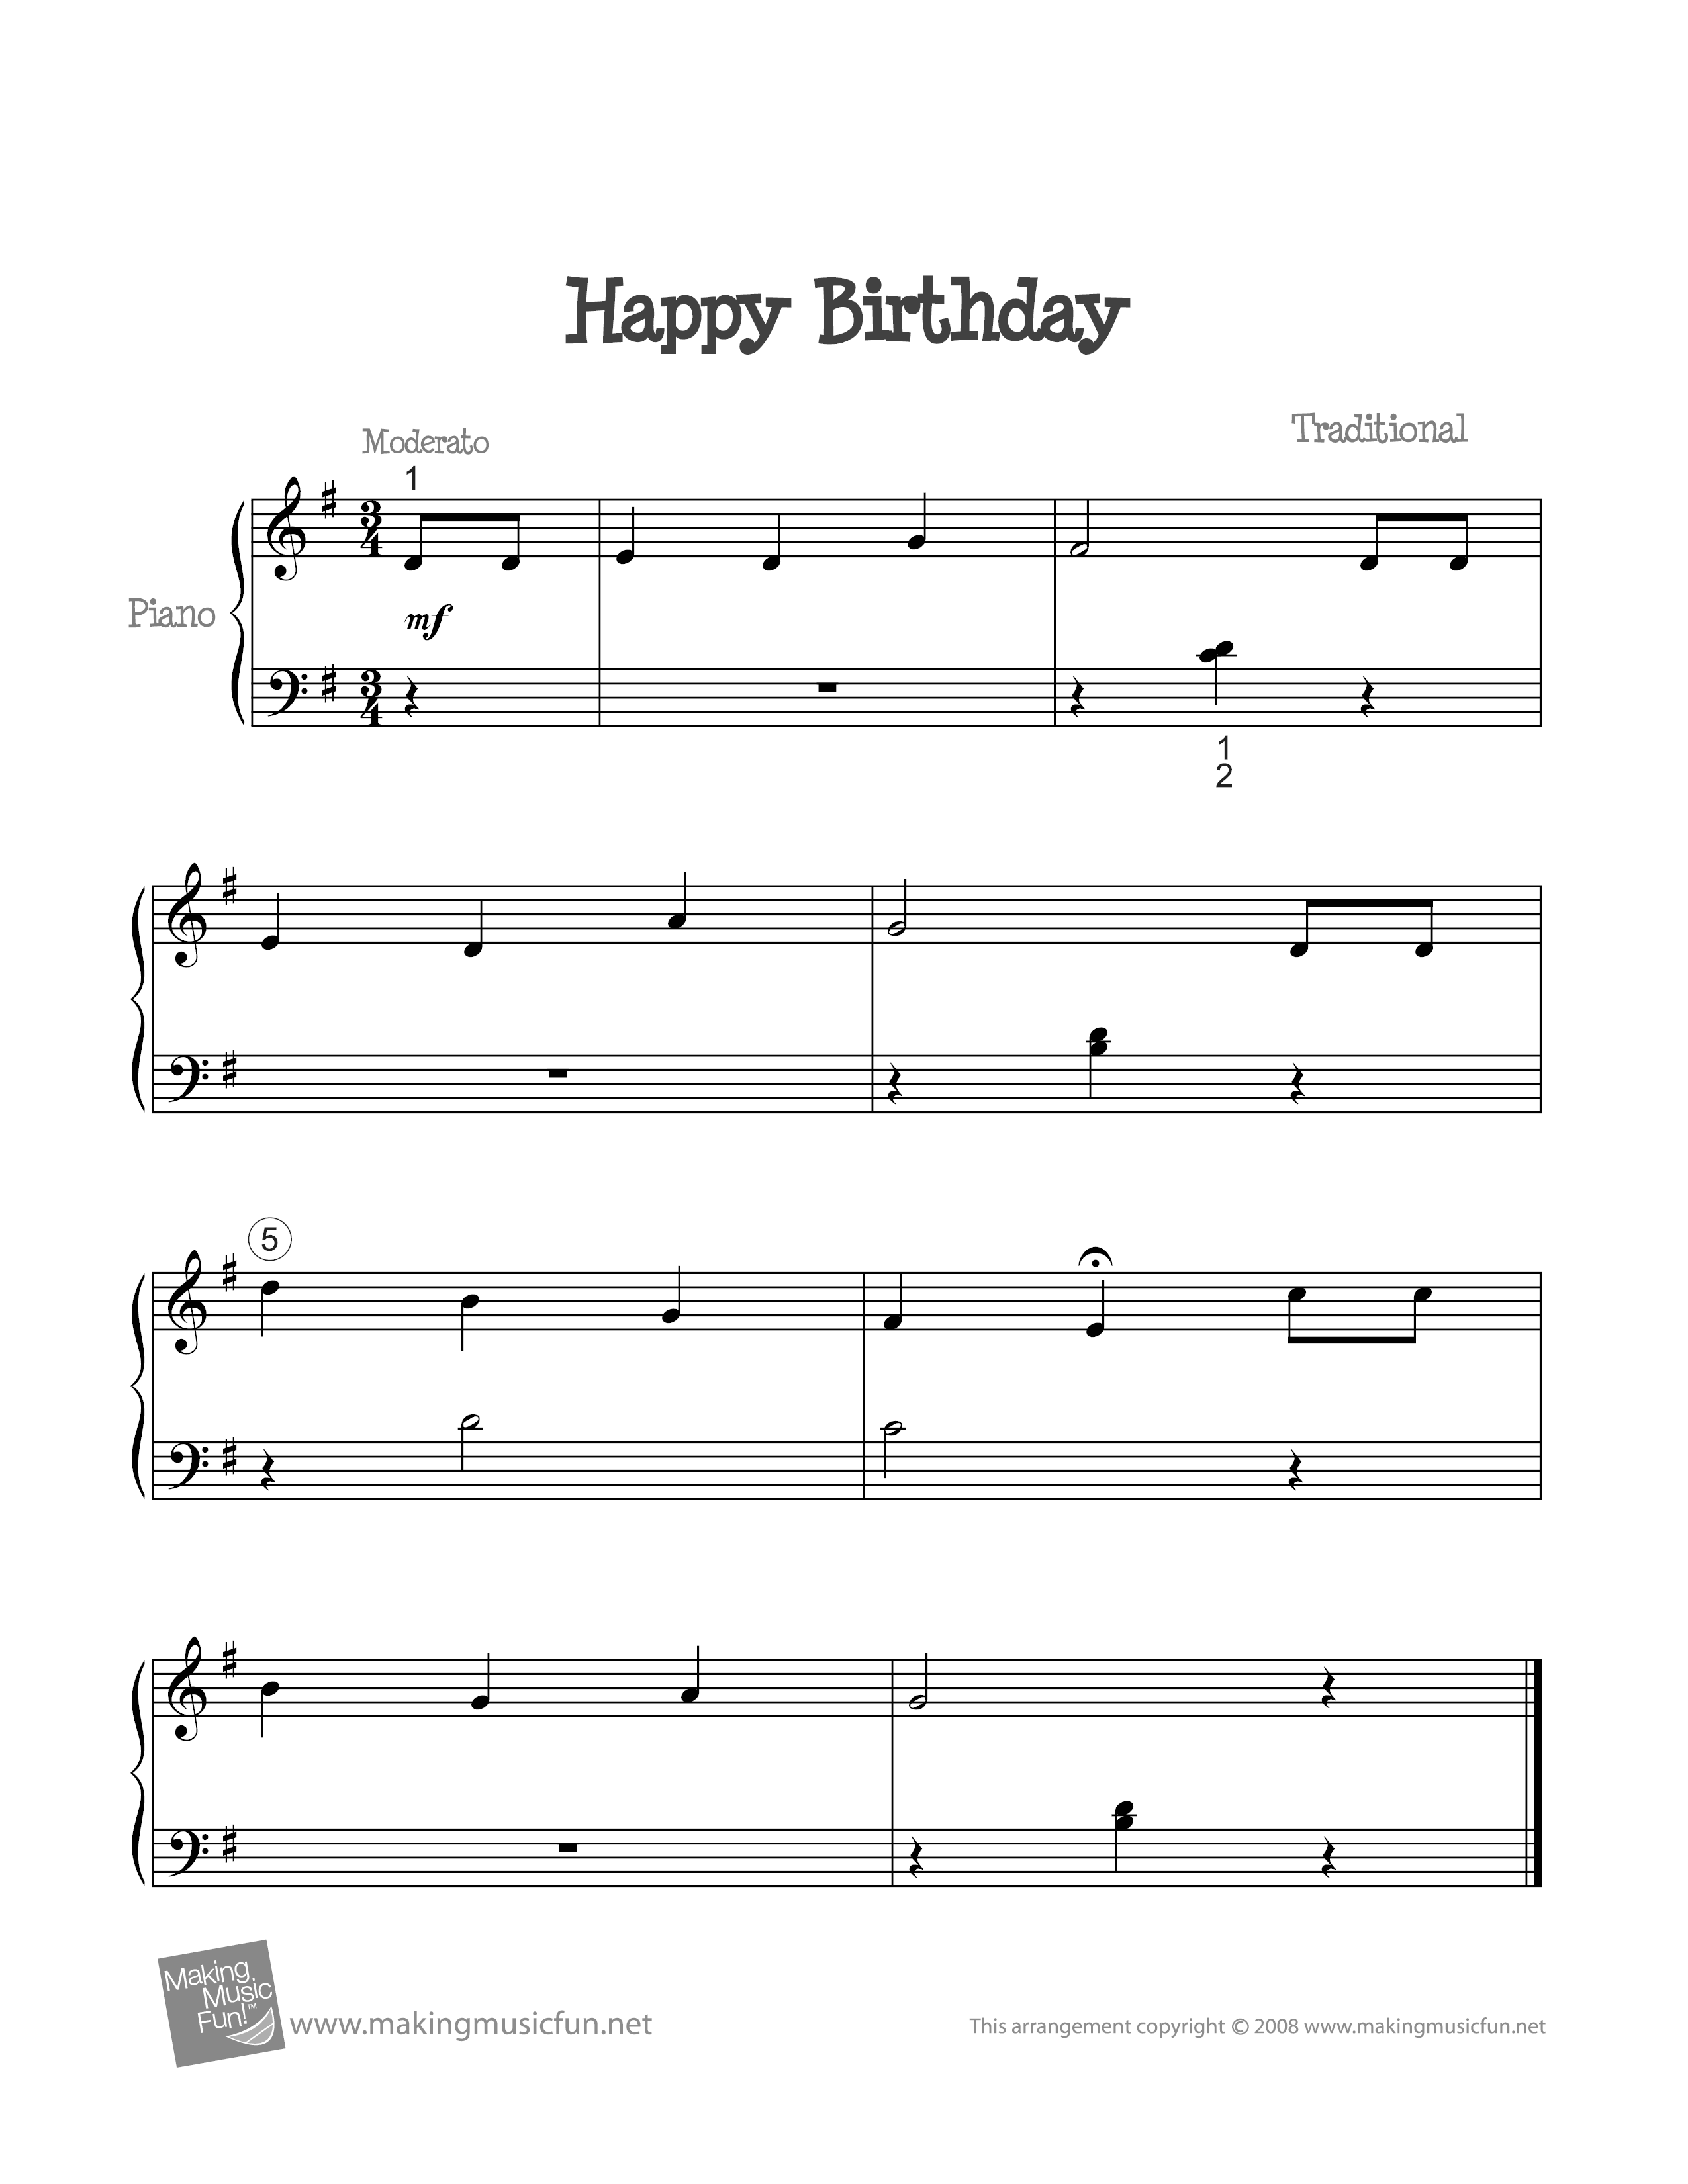 Happy Birthday Score